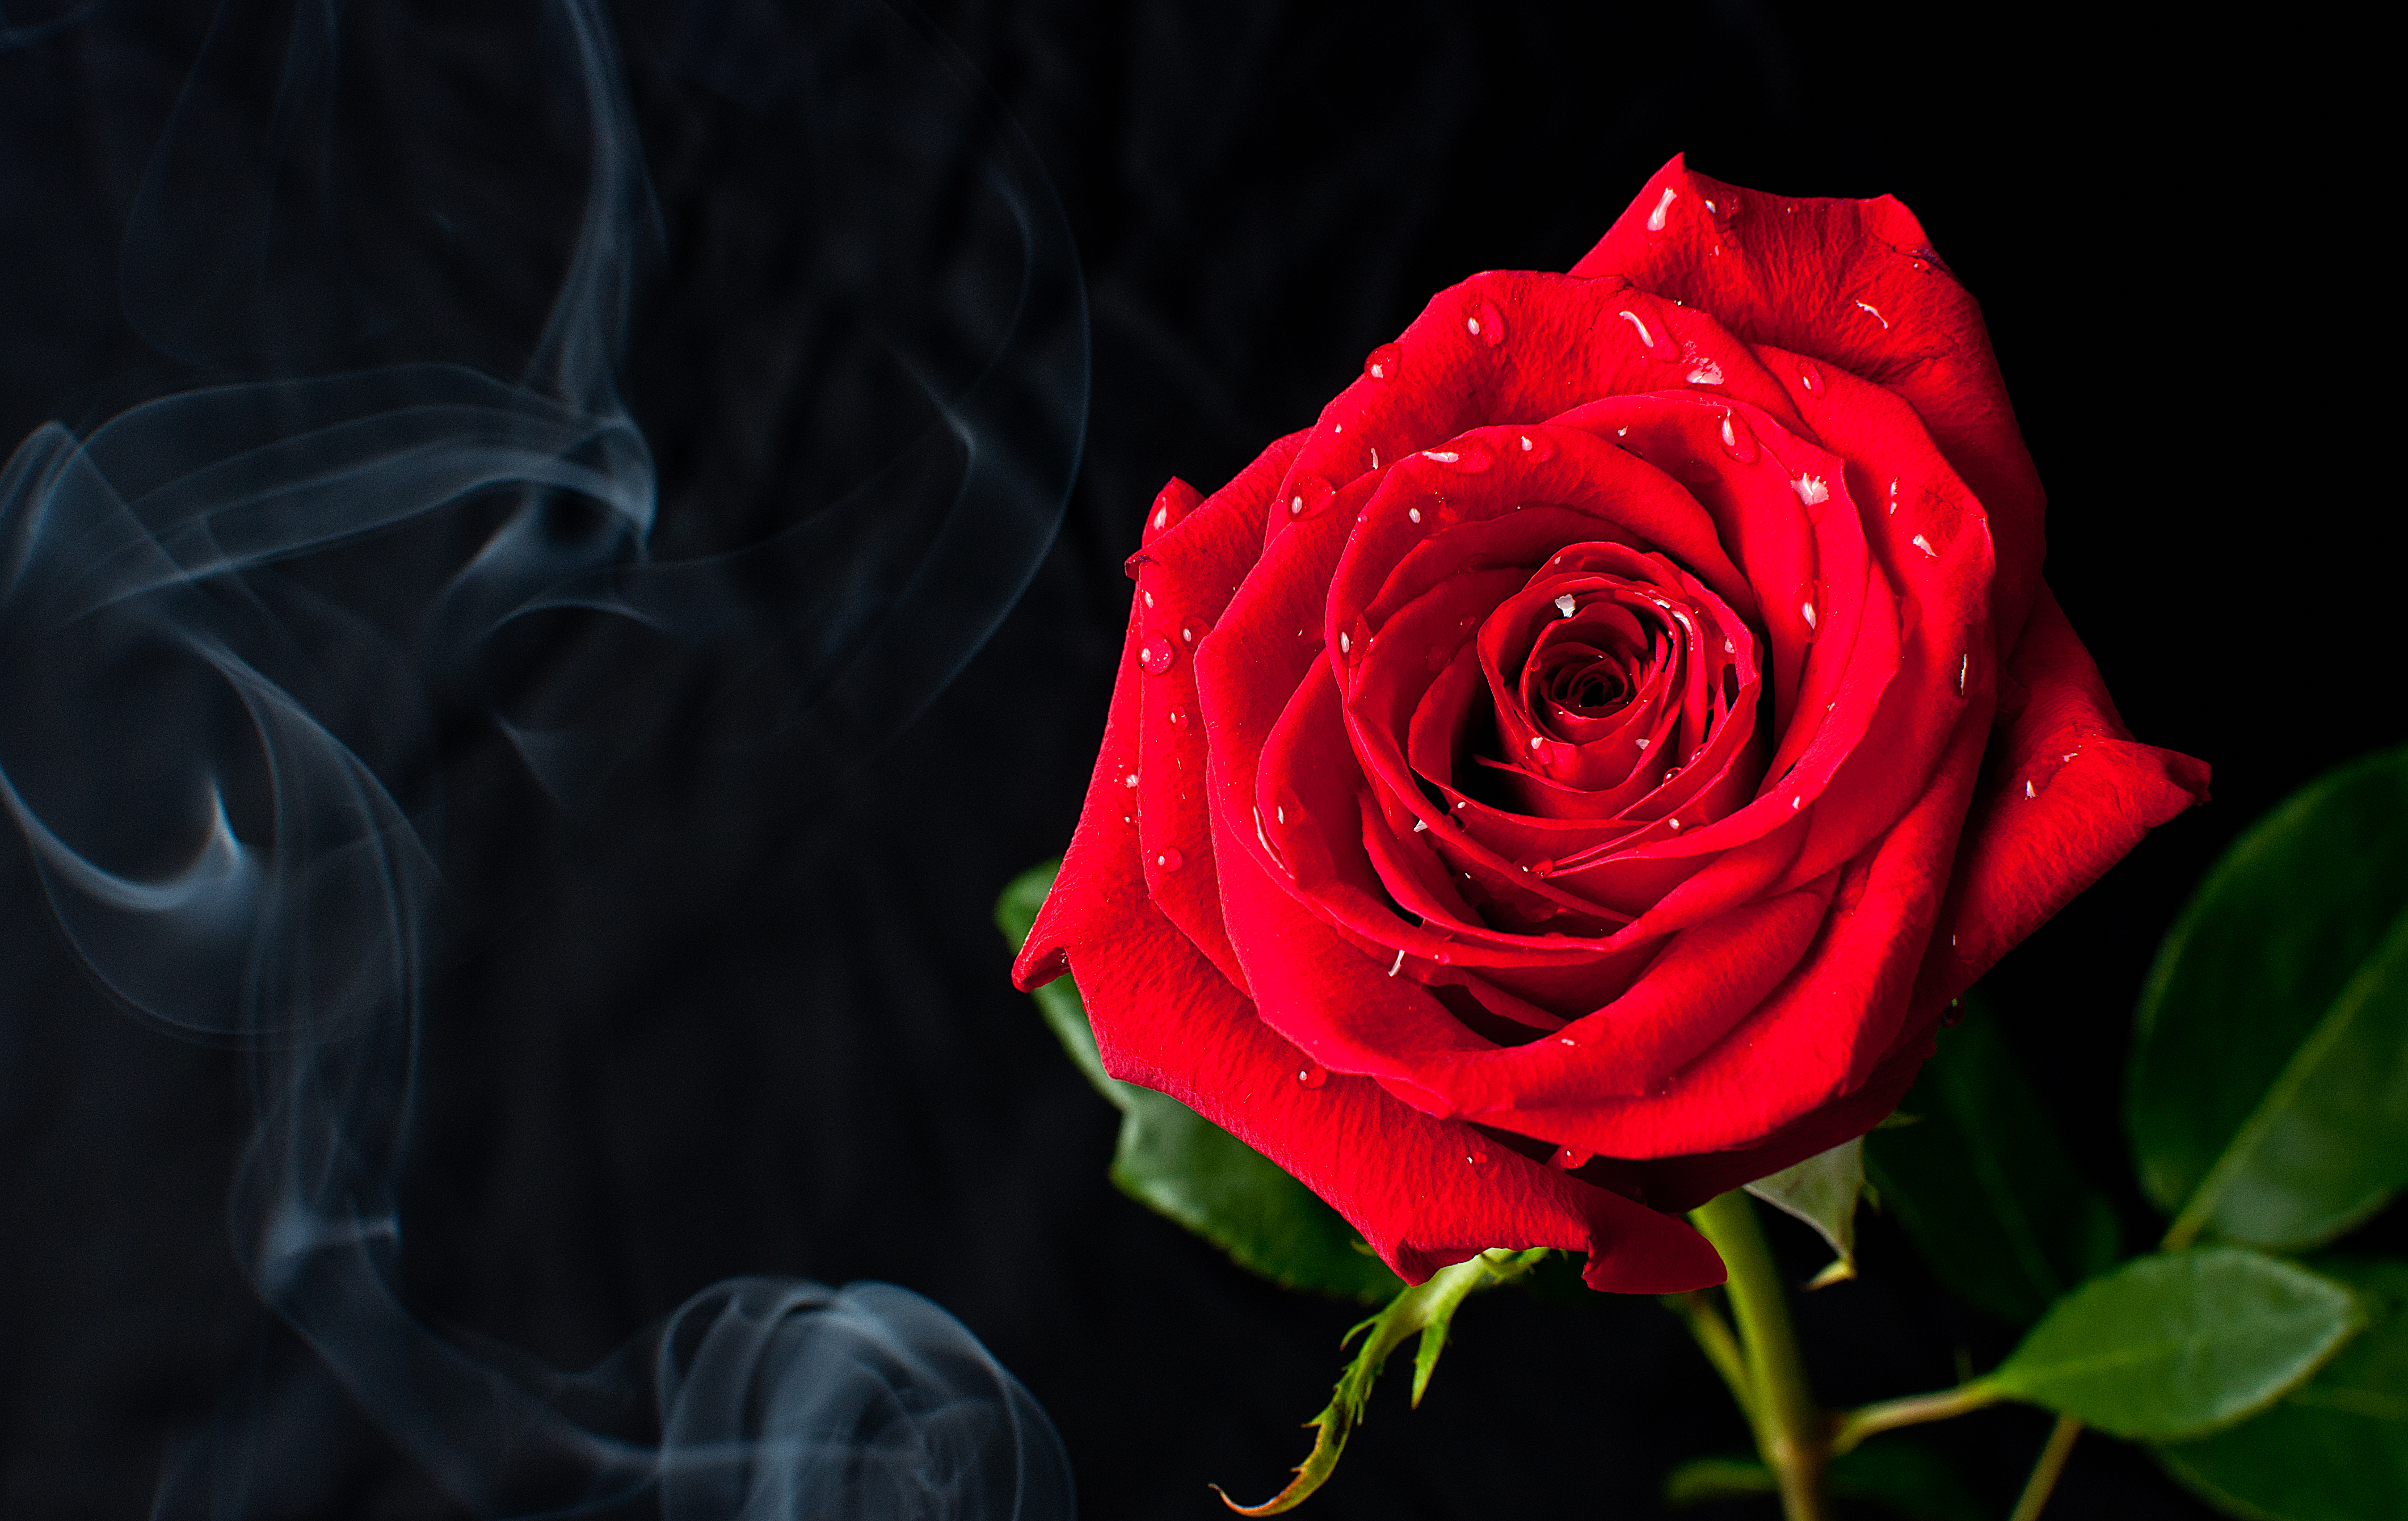 フリー写真素材 花 植物 薔薇 バラ 赤色の花 画像素材なら 無料 フリー写真素材のフリーフォト